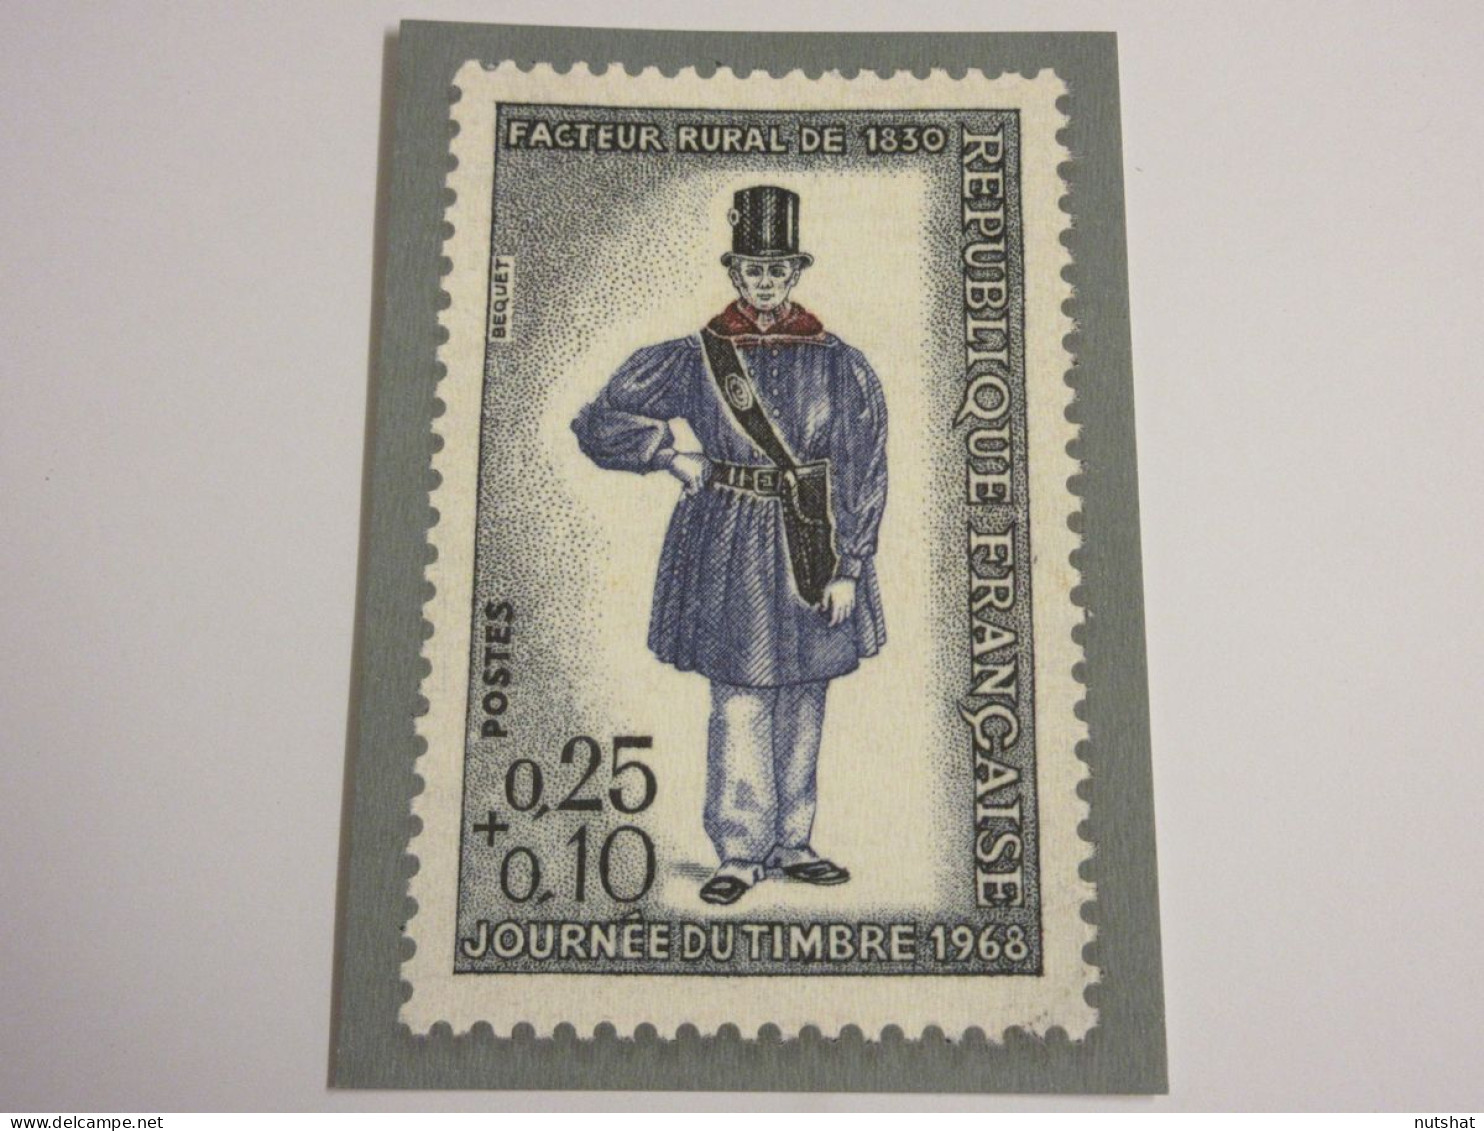 CP CARTE POSTALE TIMBREE INTERNATIONALE FACTEUR RURAL 1830 PLAQUE FACTEUR 1975 - Postzegels (afbeeldingen)